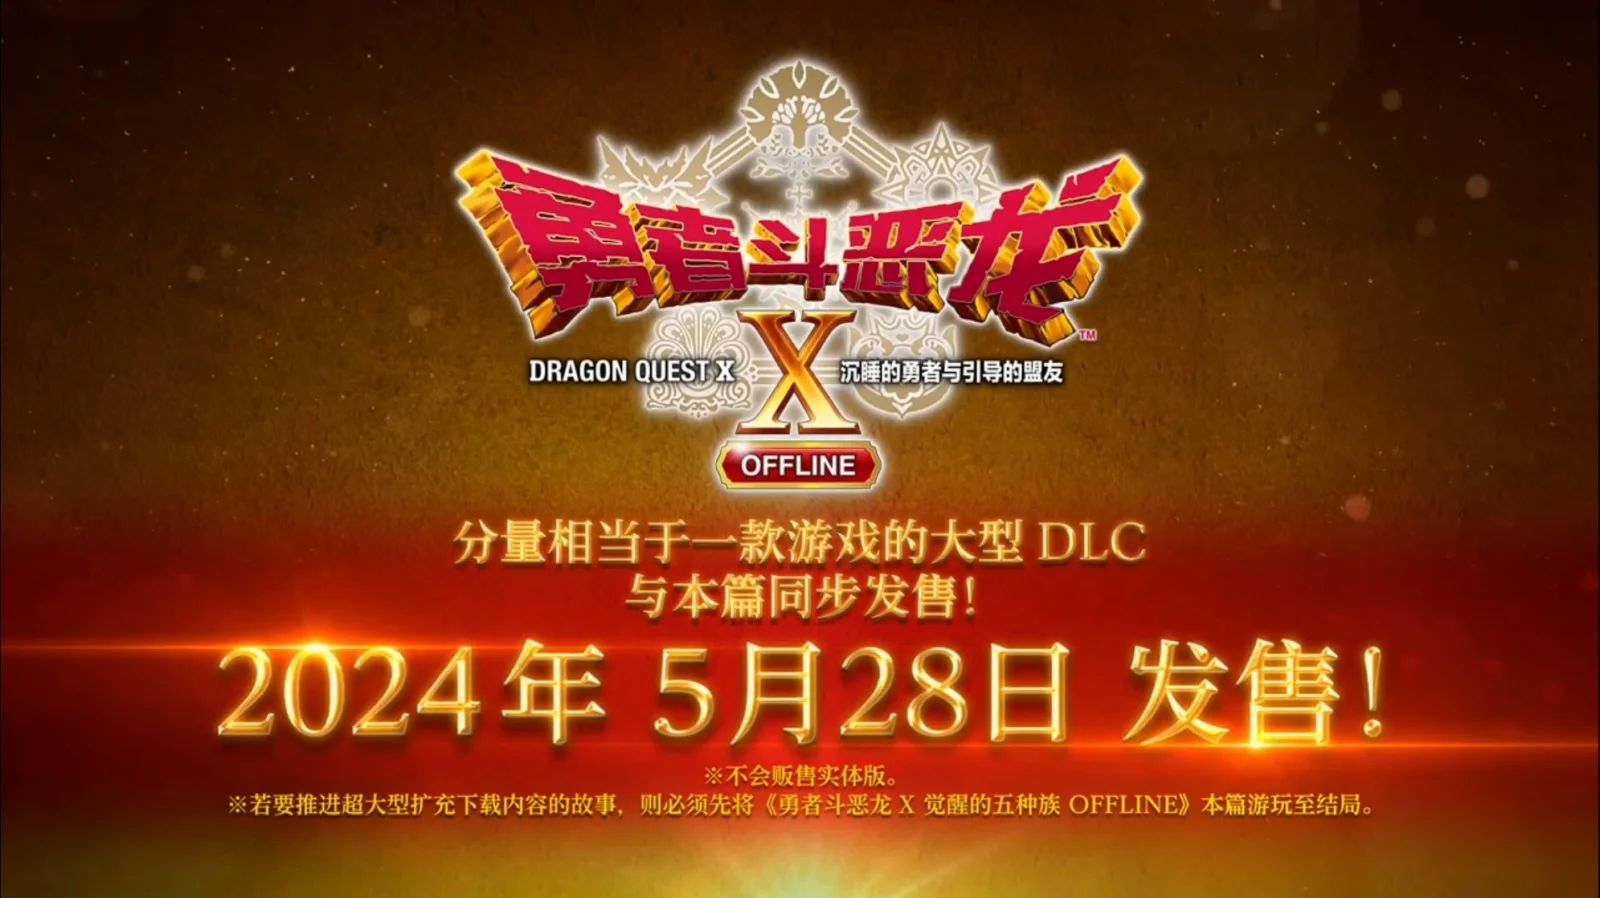 SE发布《勇者斗恶龙X-沉睡的勇者与引导的盟友OFFLINE》中文宣传片，5月28日登陆PS4/5和steam平台